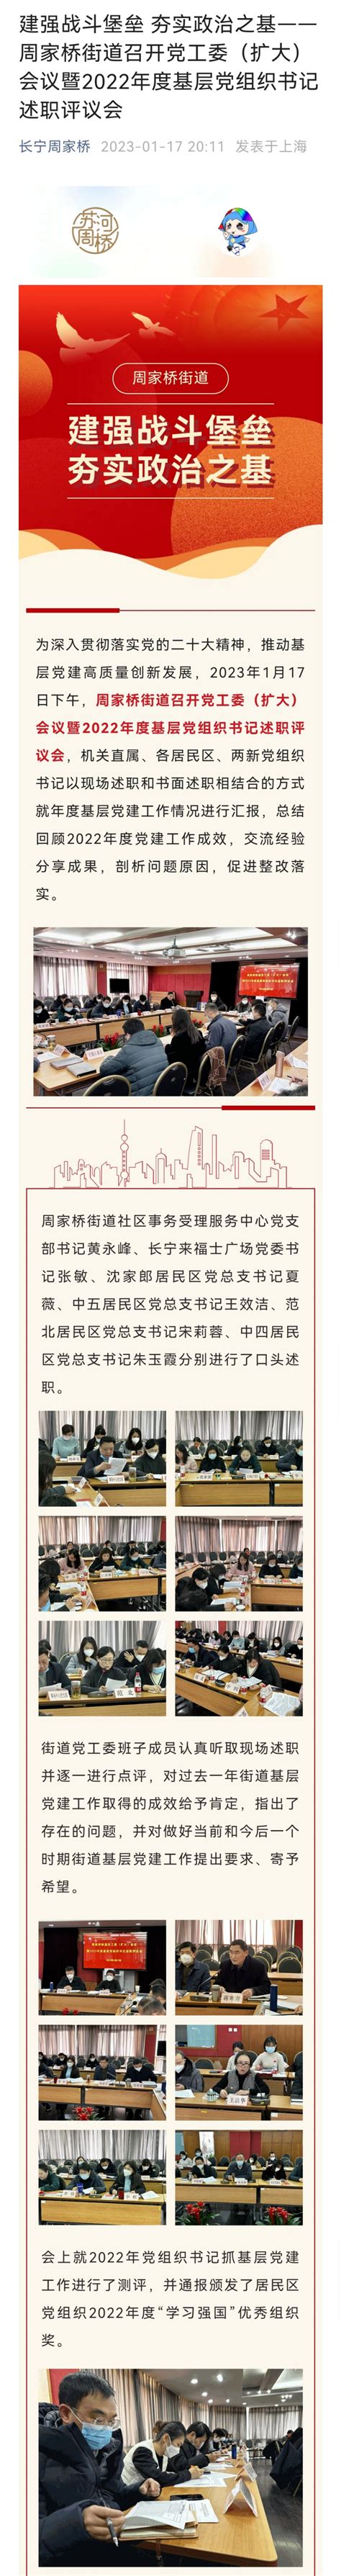 上海市长宁区人民政府-长宁区规划和自然资源局-工作信息-区规划资源局召开上海影城现场服务会